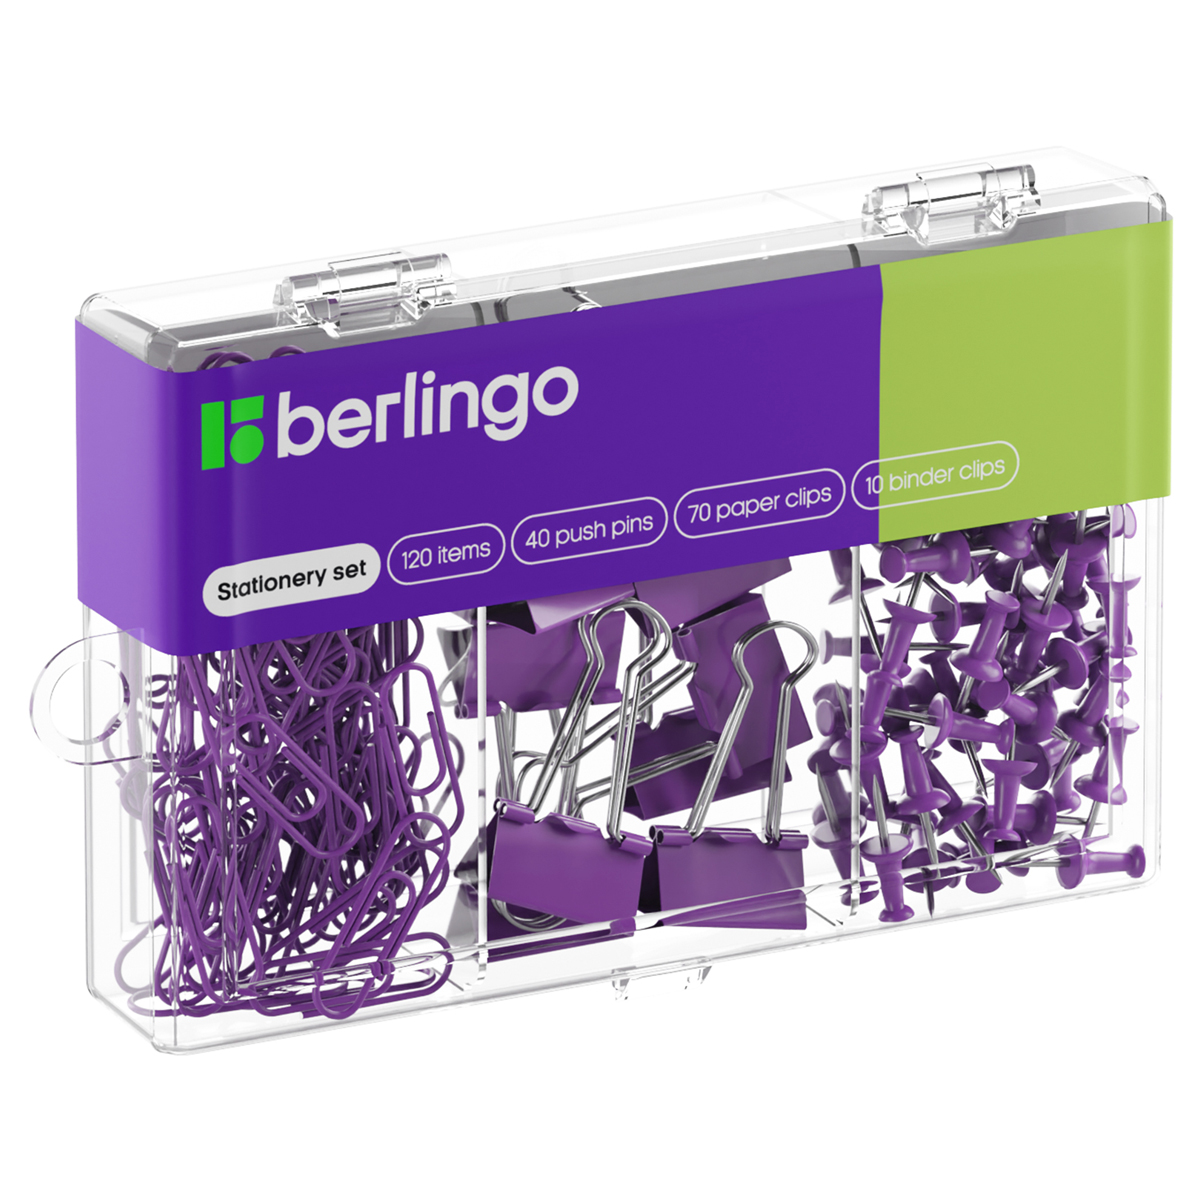 Набор мелкоофисных принадлежностей Berlingo, 120 предметов, фиолетовый, пластиковая упаковка